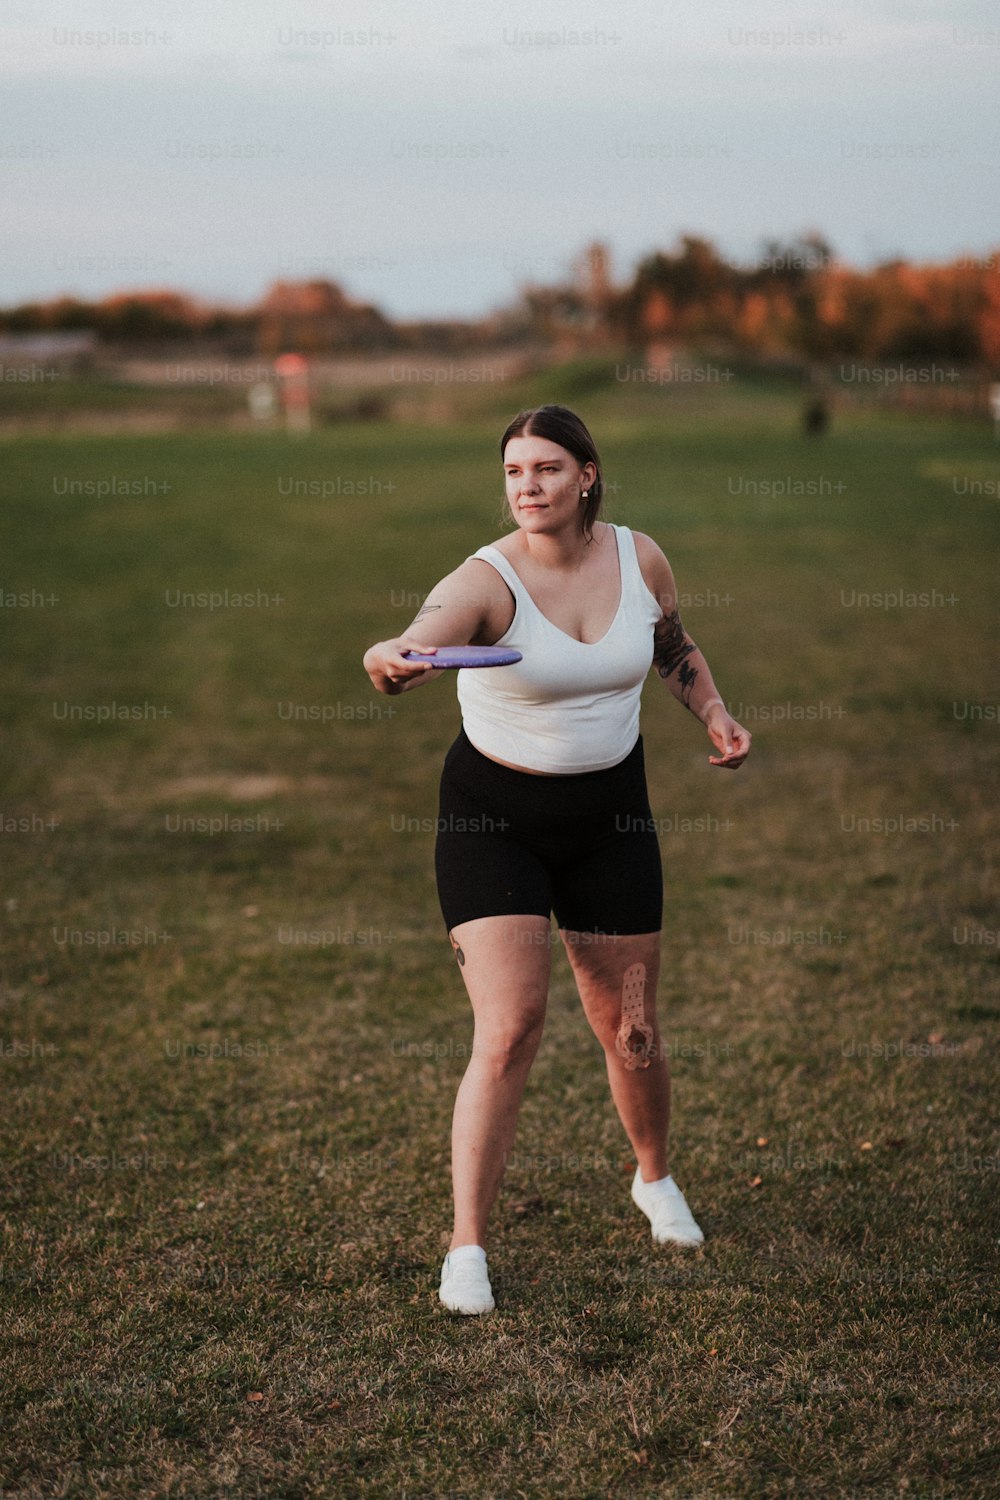 eine Frau steht auf einem Feld und hält eine Frisbee in der Hand